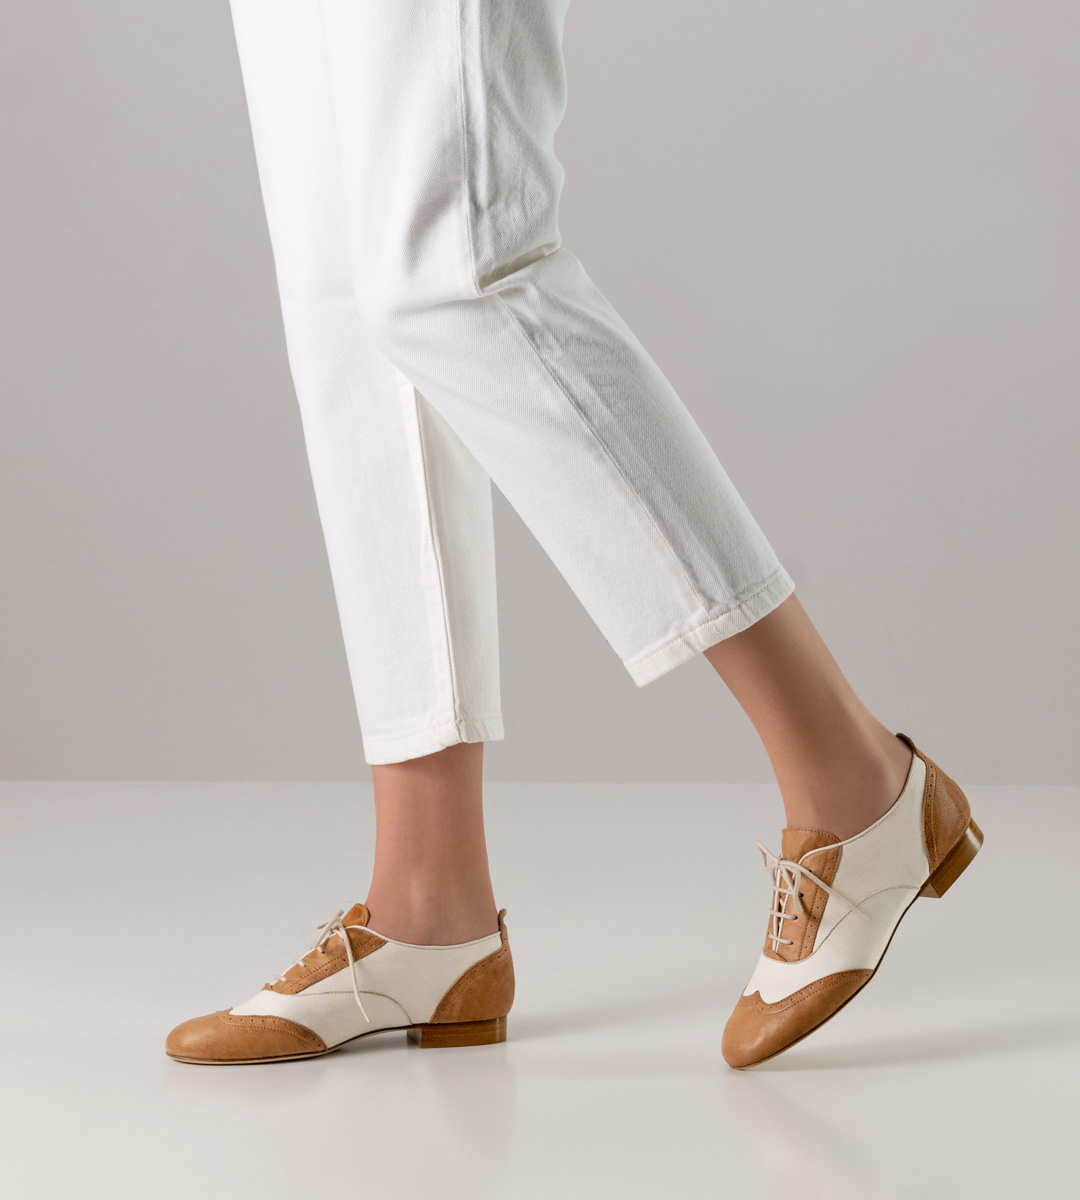 weiße Hose in Kombination mit 1,5 cm hohem Werner Kern Damentanzschuh für Swing